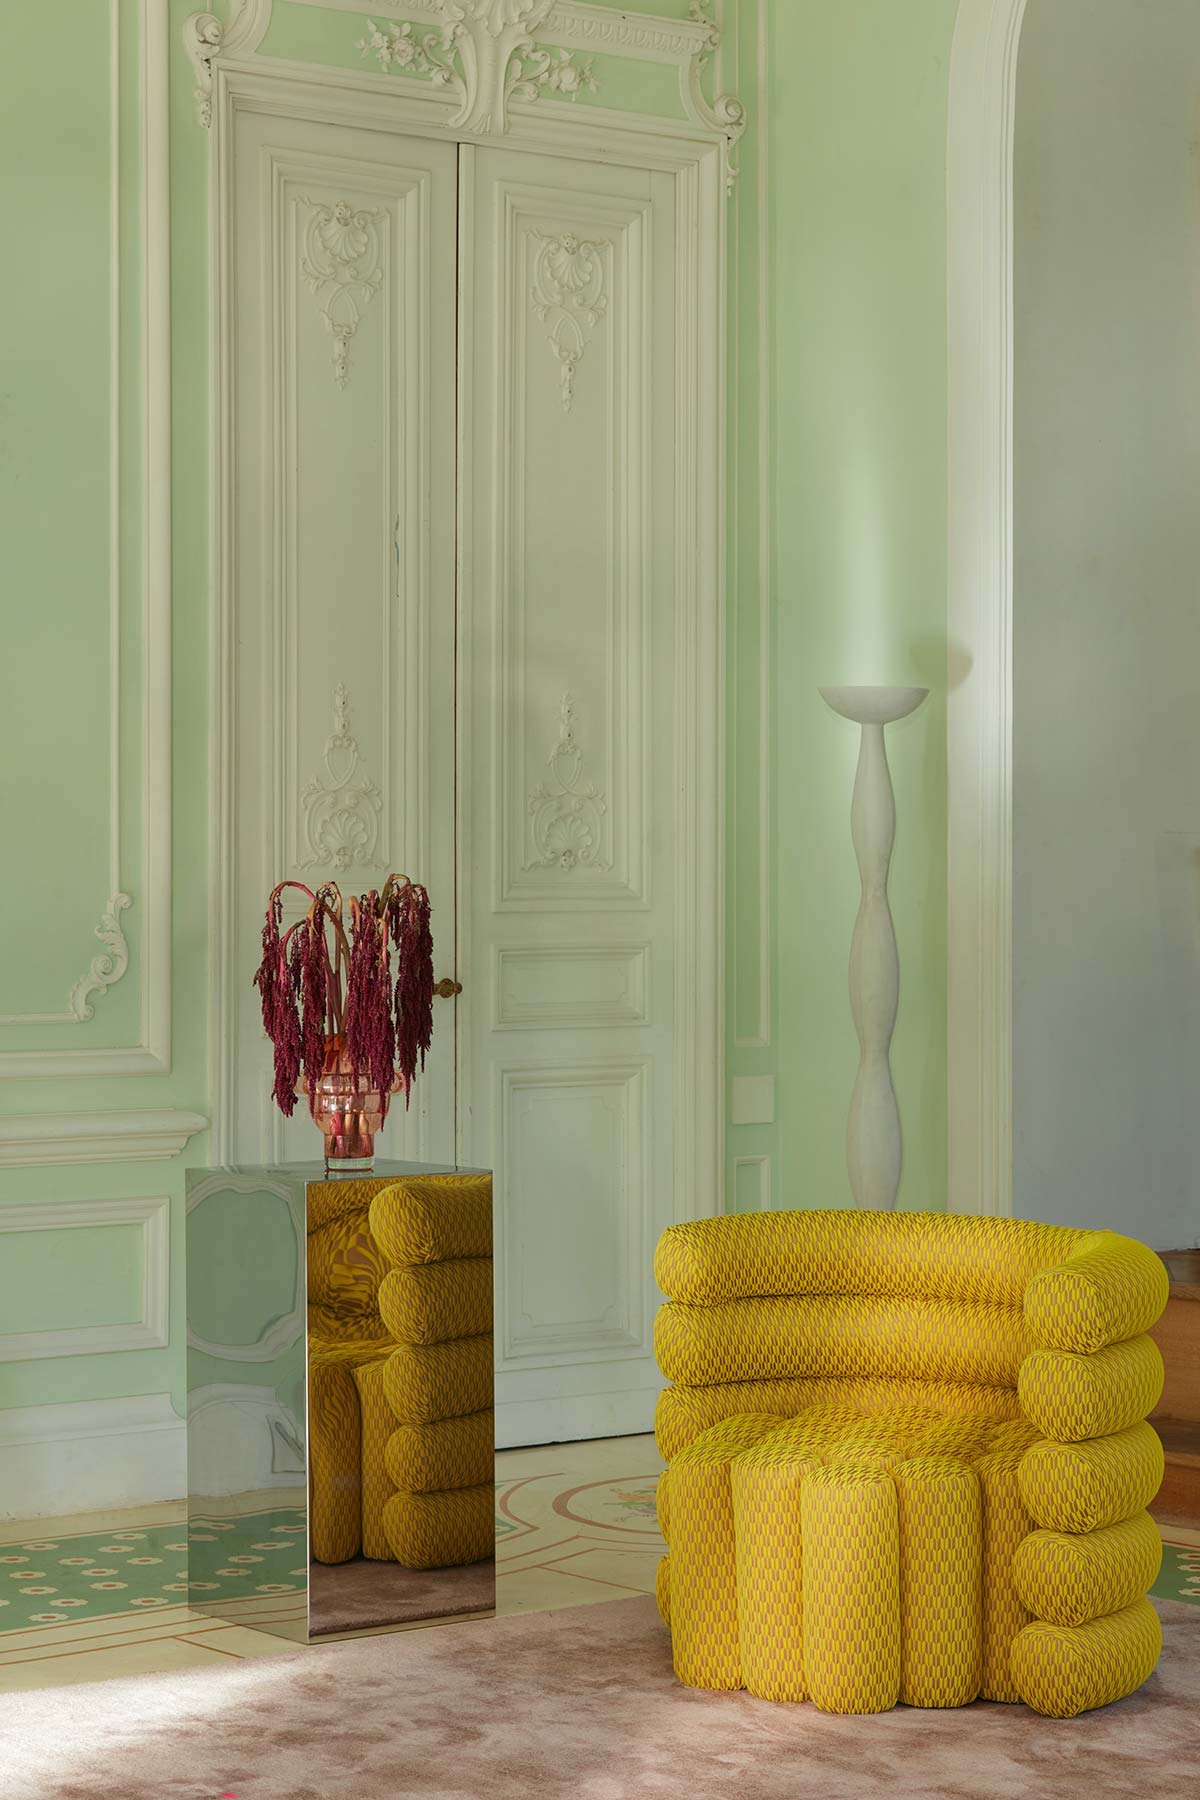 Transat Mimosa, Les Bains collection by Métaphores, design Emilie Paralitici - Photo © Gaëlle Le Boulicaut